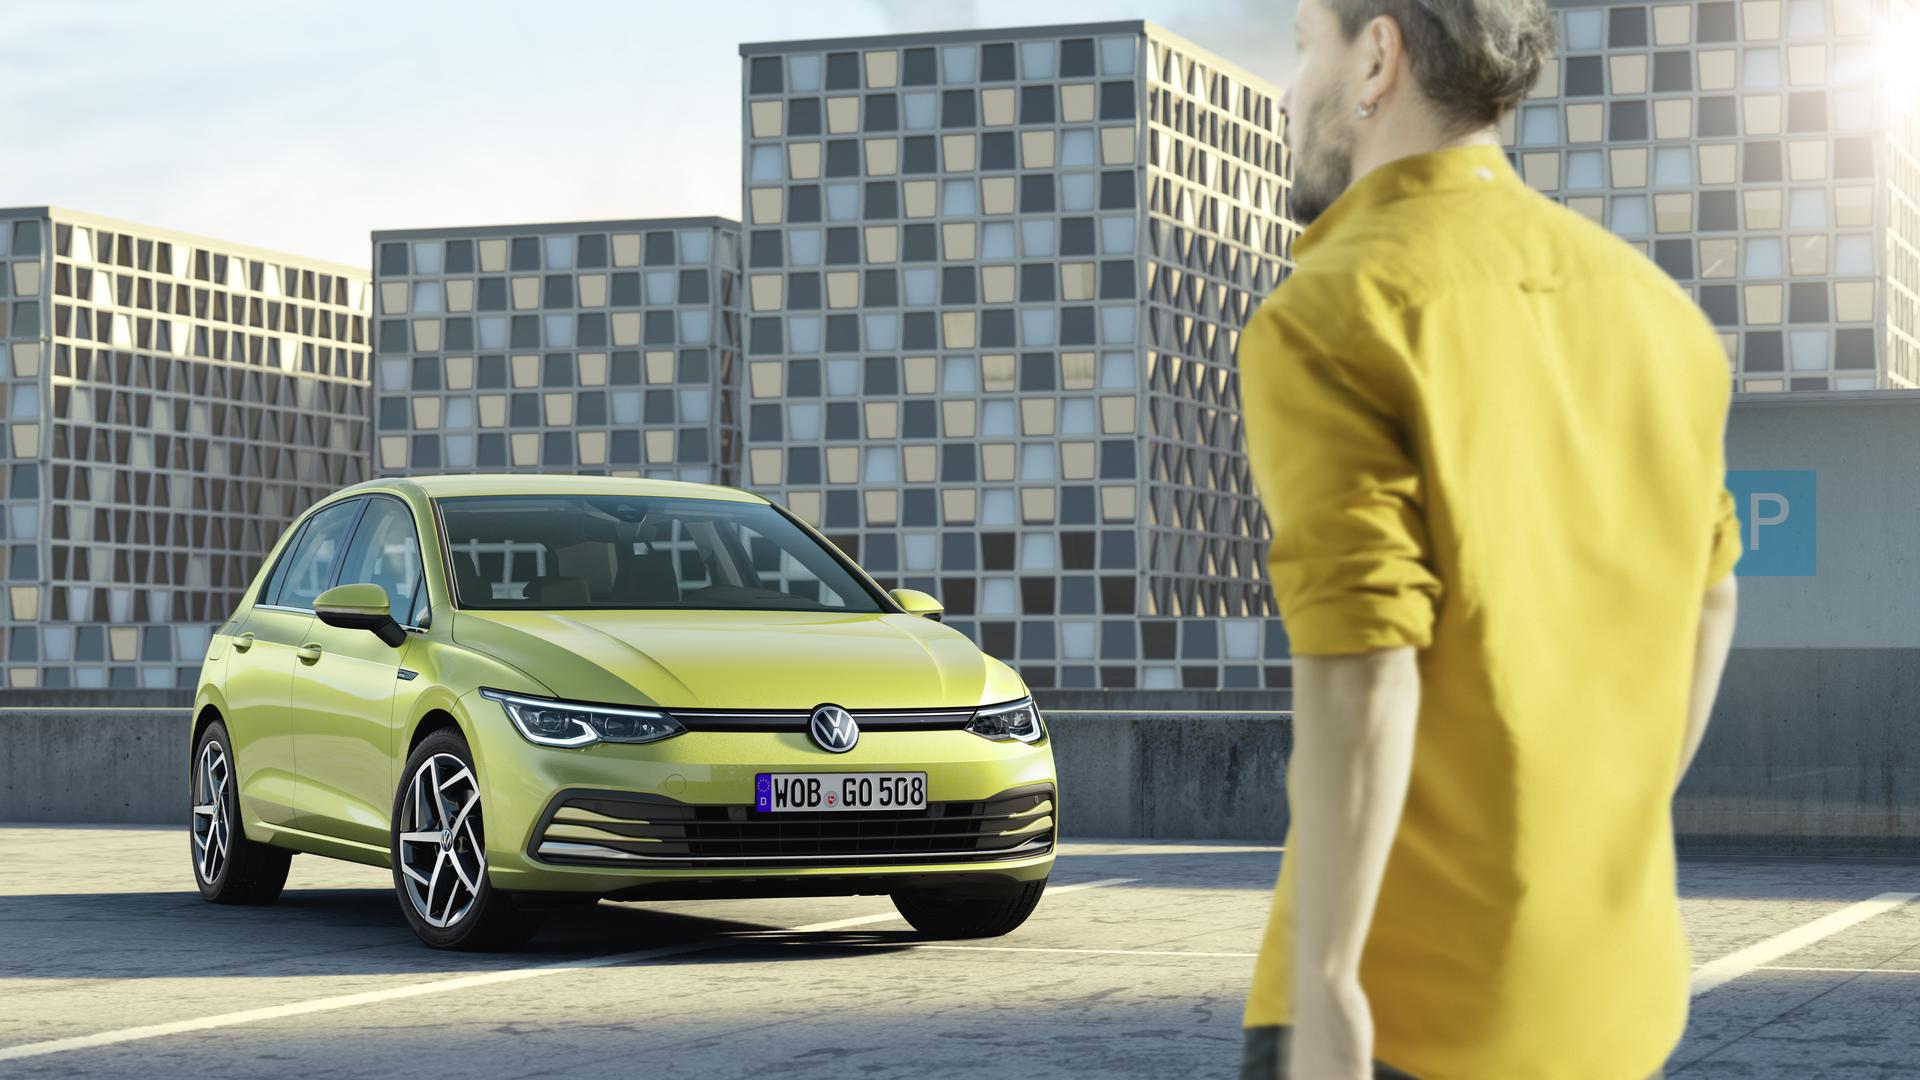 NAJVEĆE ZVIJEZDE bit će novi VW Golf, električni VW ID.3 i električna Opel Corsa